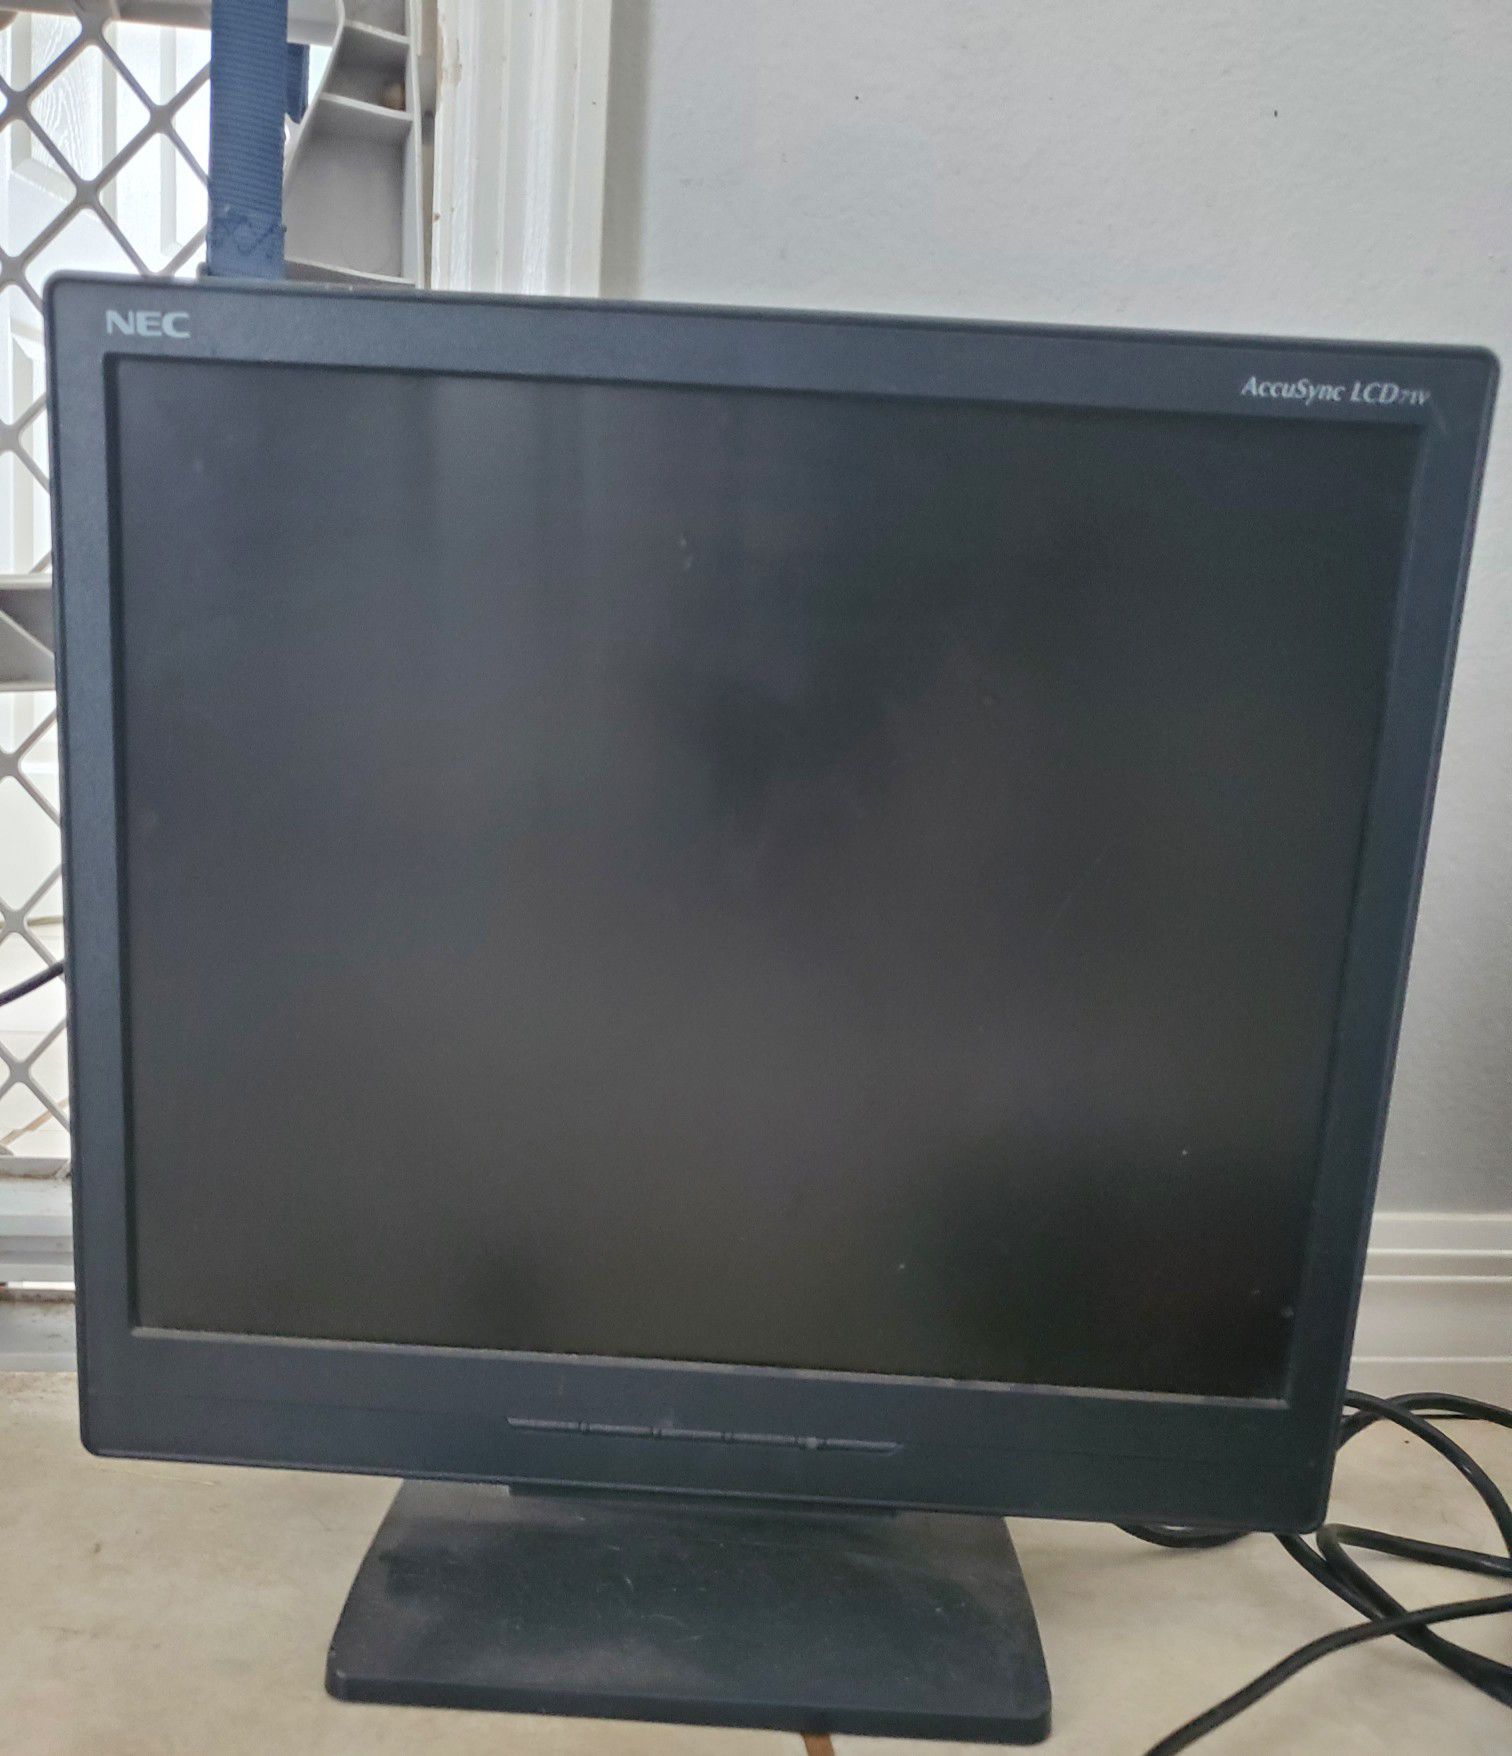 NEC Computer Monitor